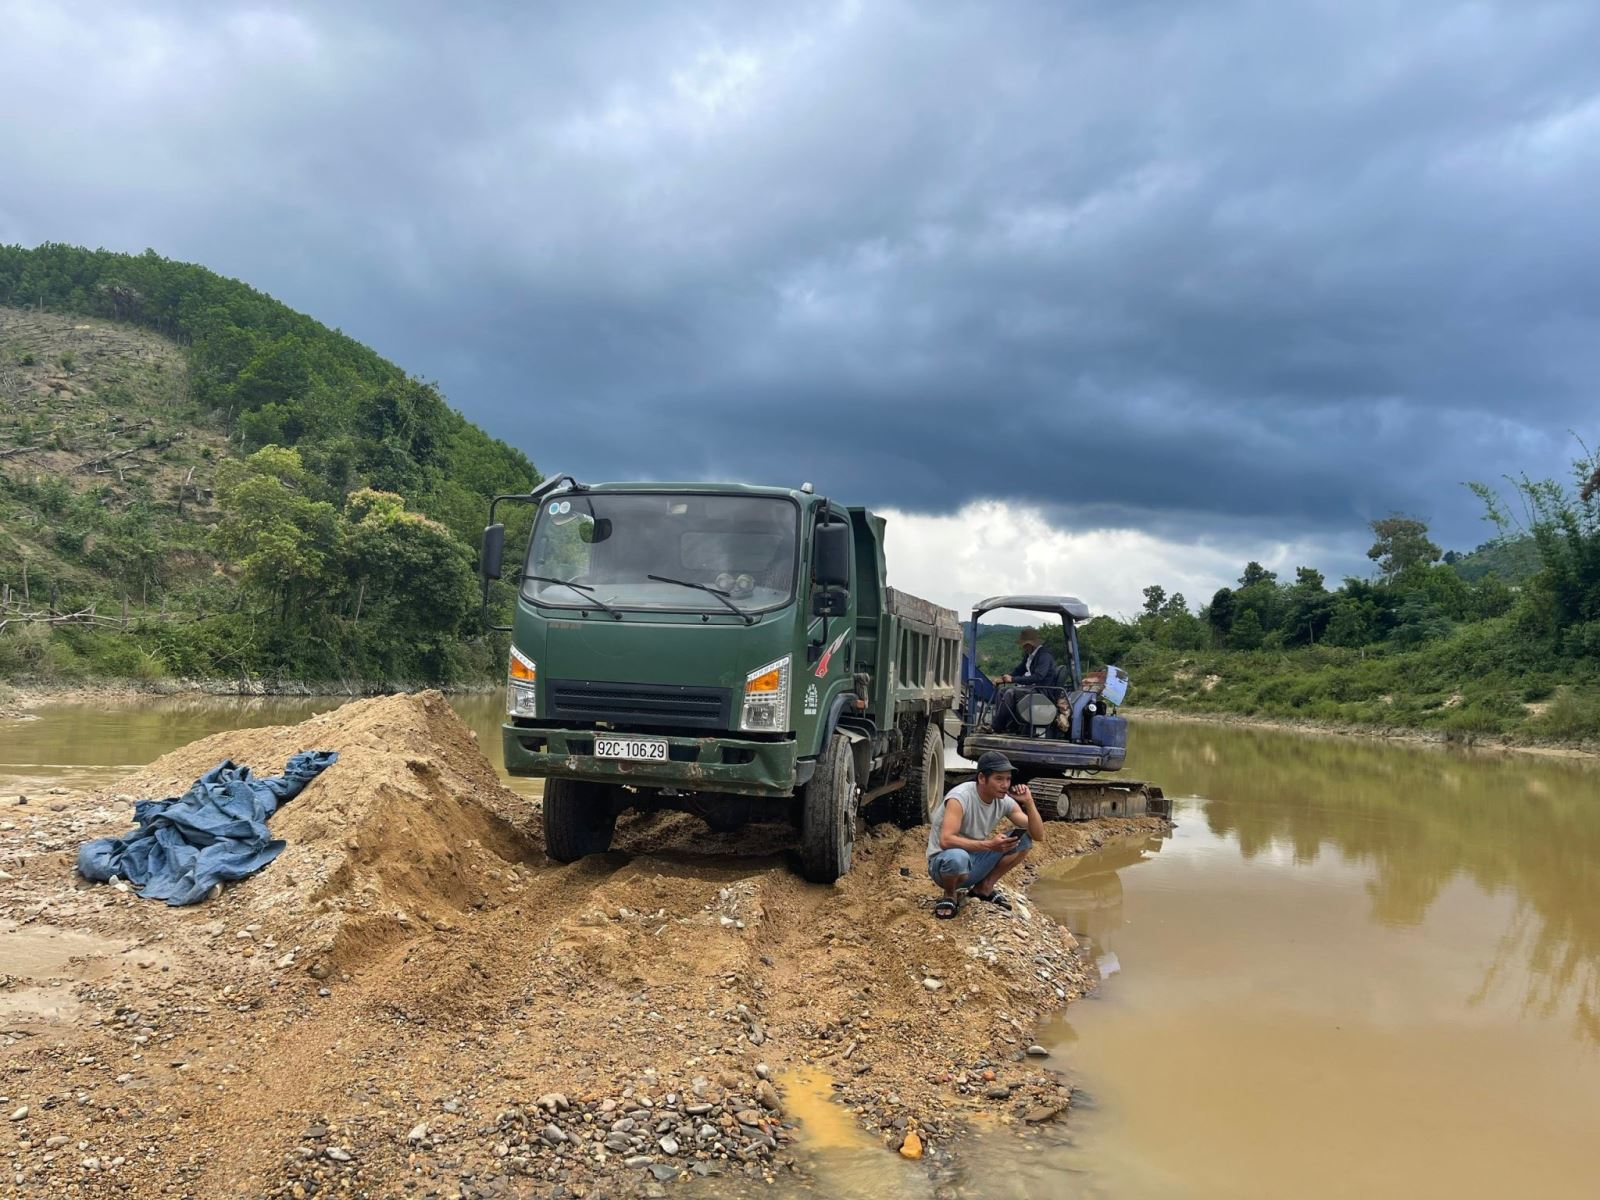 Phương tiện khai thác cát lậu bị bắt trên sông Vàng, xã Ba, huyện Đông Giang, tỉnh Quảng Nam.